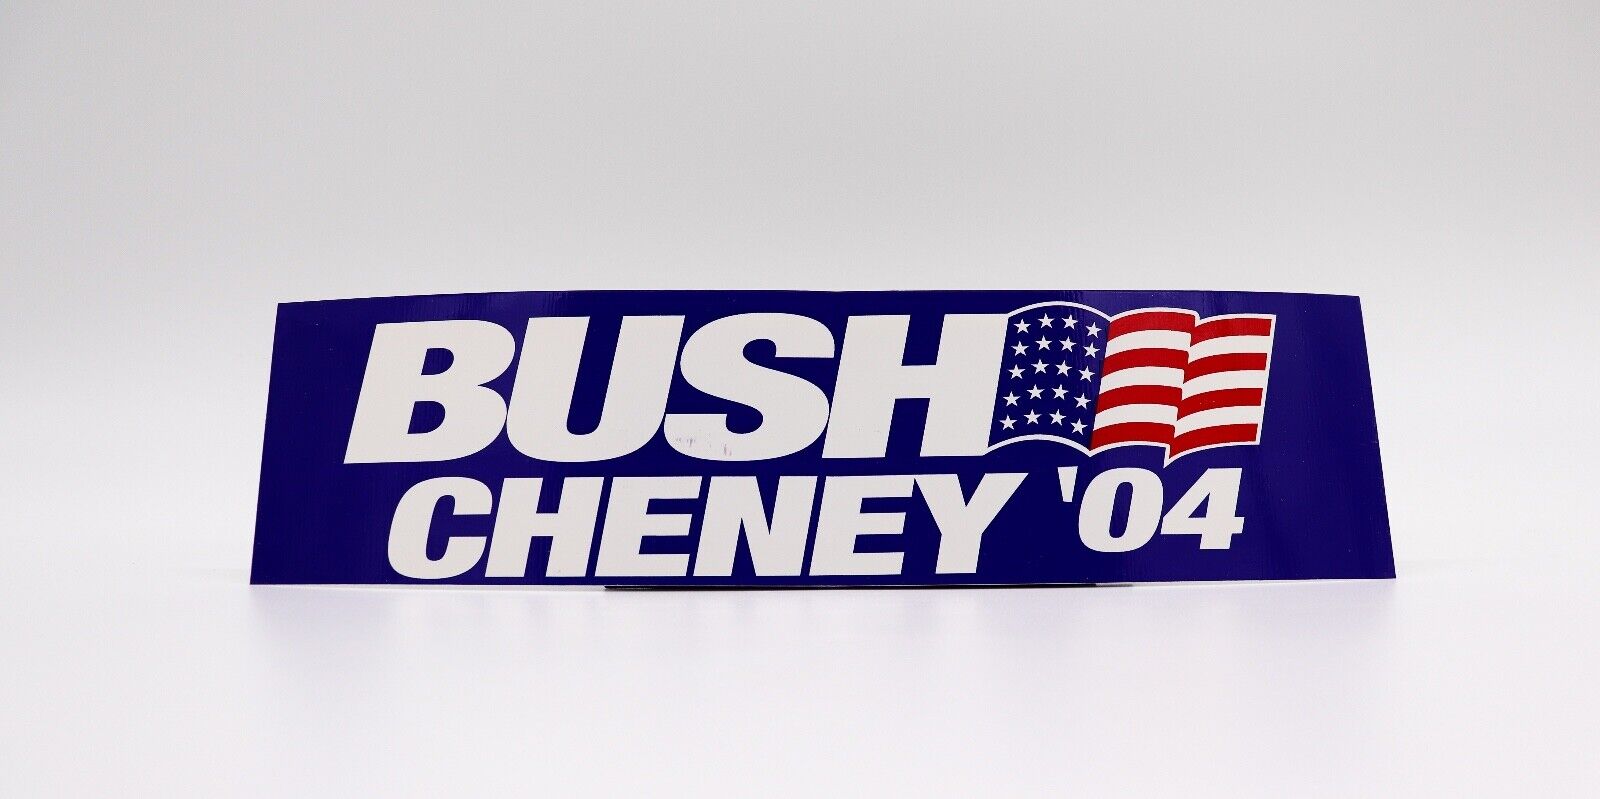 Bush-Cheney 2004 Presidential Campaign Bumper Sticker